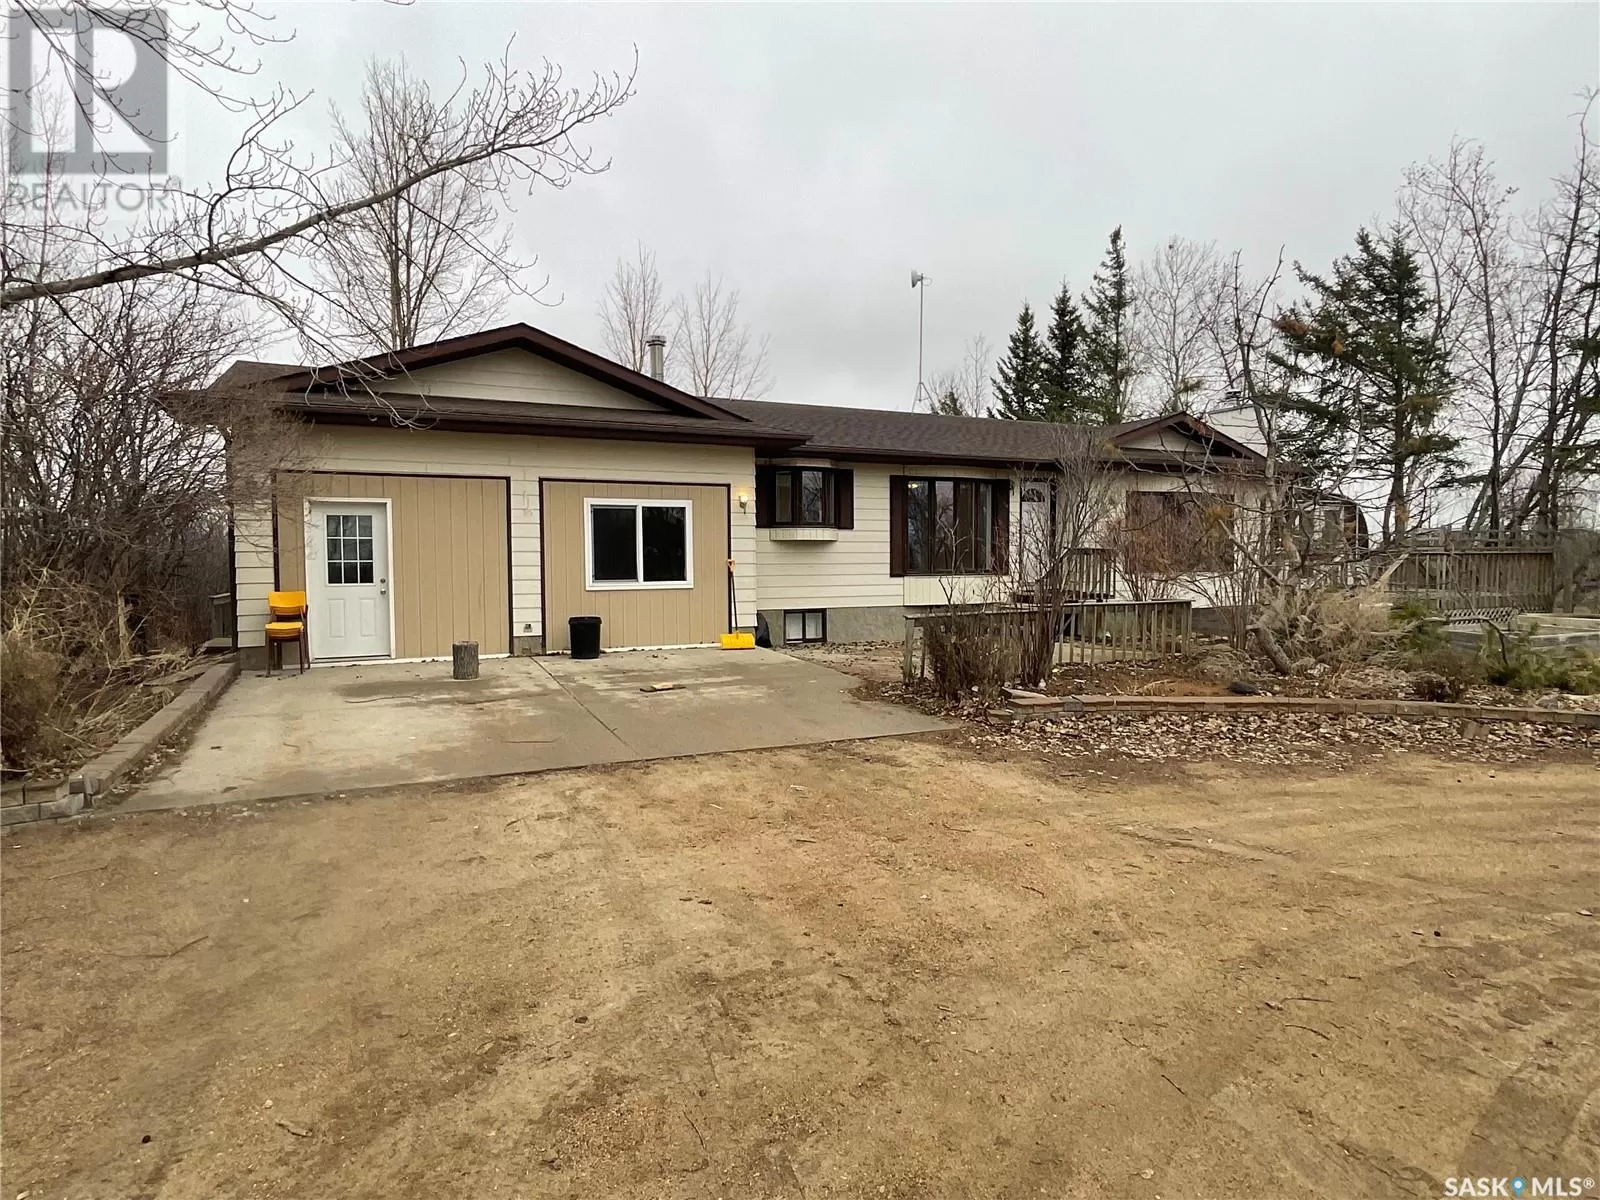 House for rent: Eagles Nest Youth Ranch, Corman Park Rm No. 344, Saskatchewan S0K 2T0